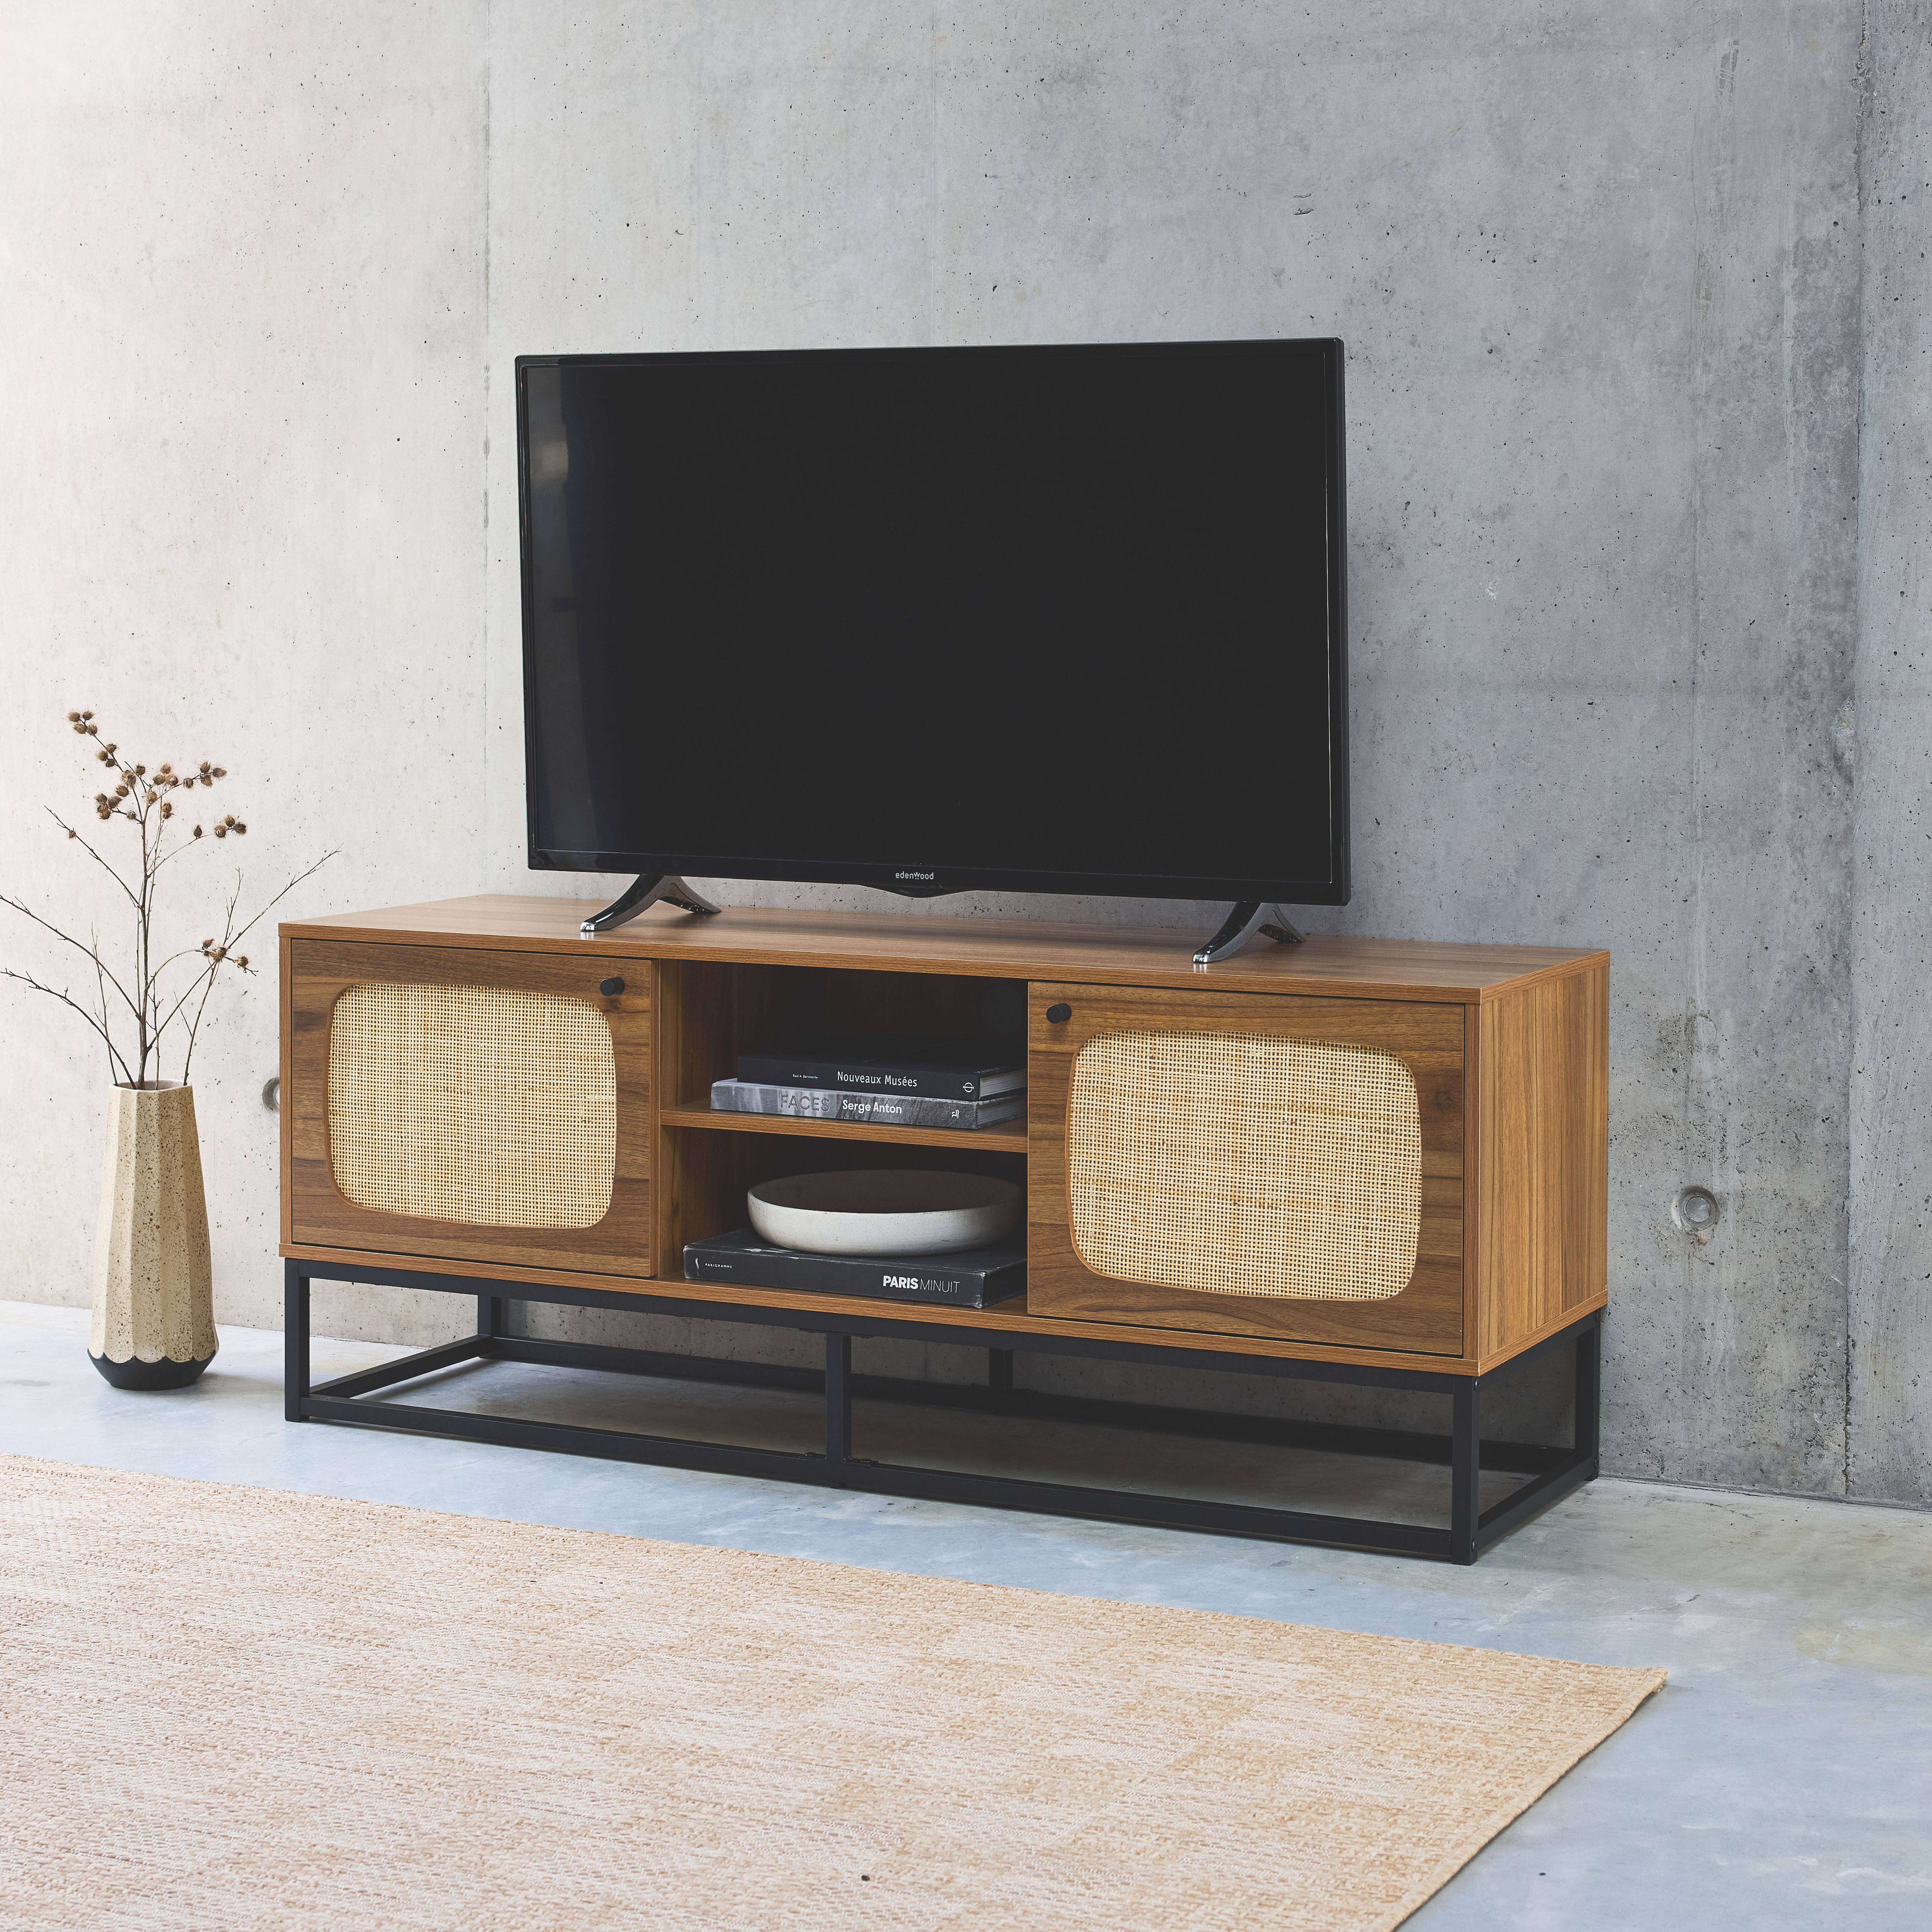 Móvel para televisão com decoração em madeira e cana arredondada 140 cm, pernas e pegas em metal preto,sweeek,Photo2